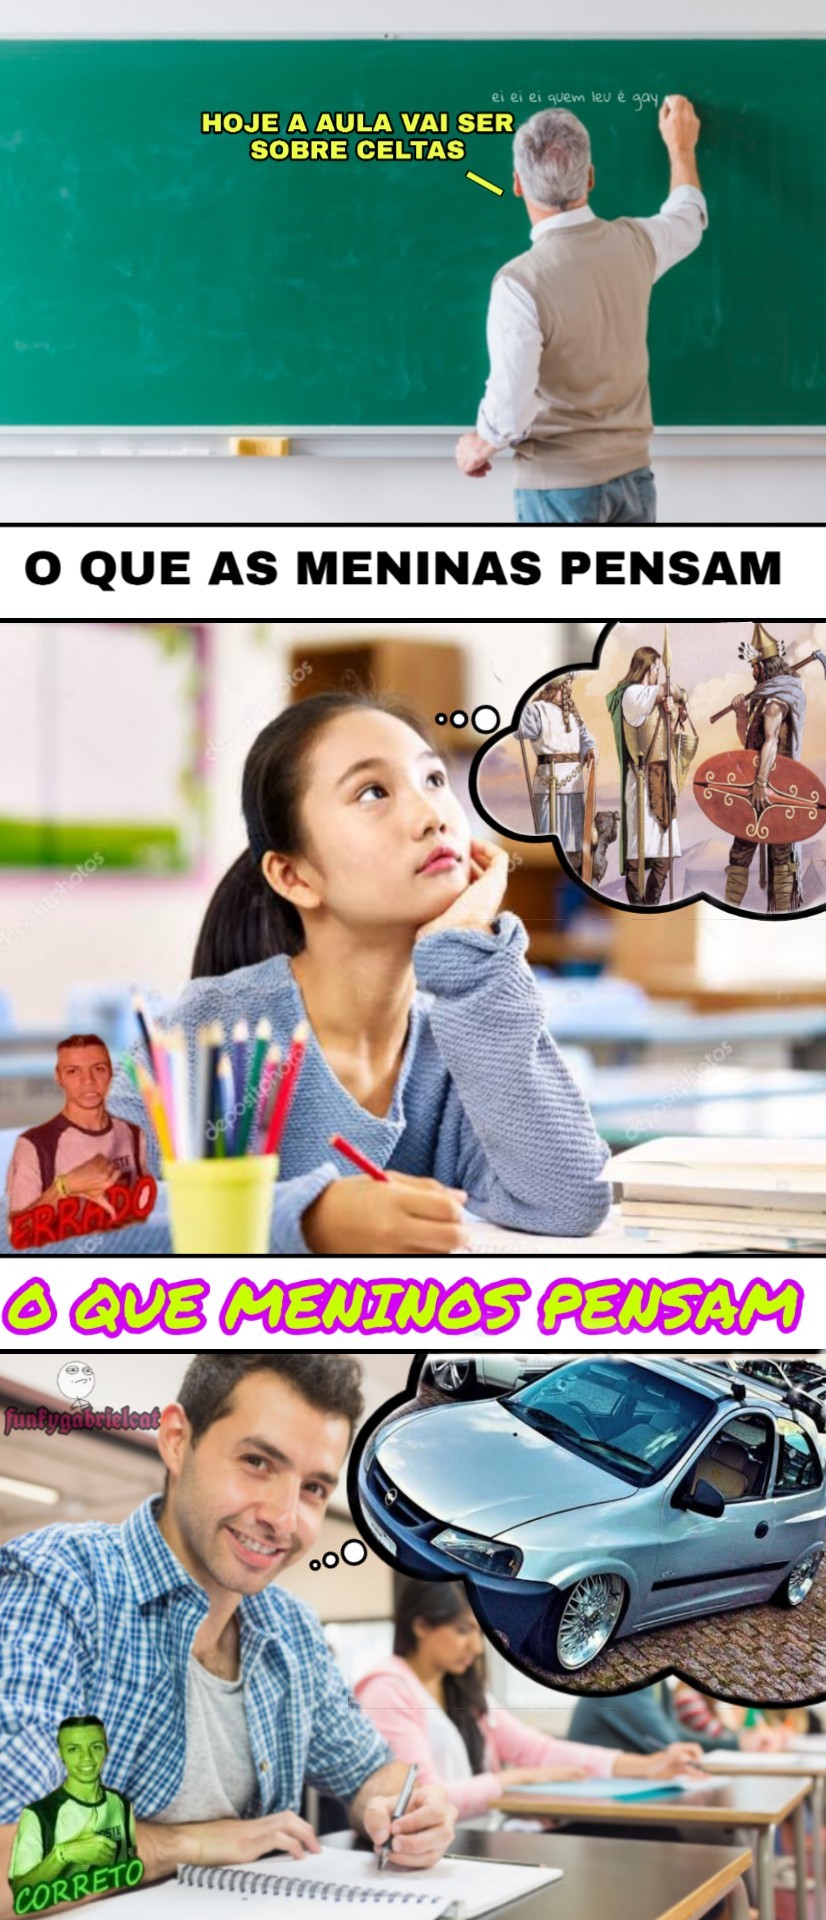 Celtinha rebaixado >>>>alll - meme